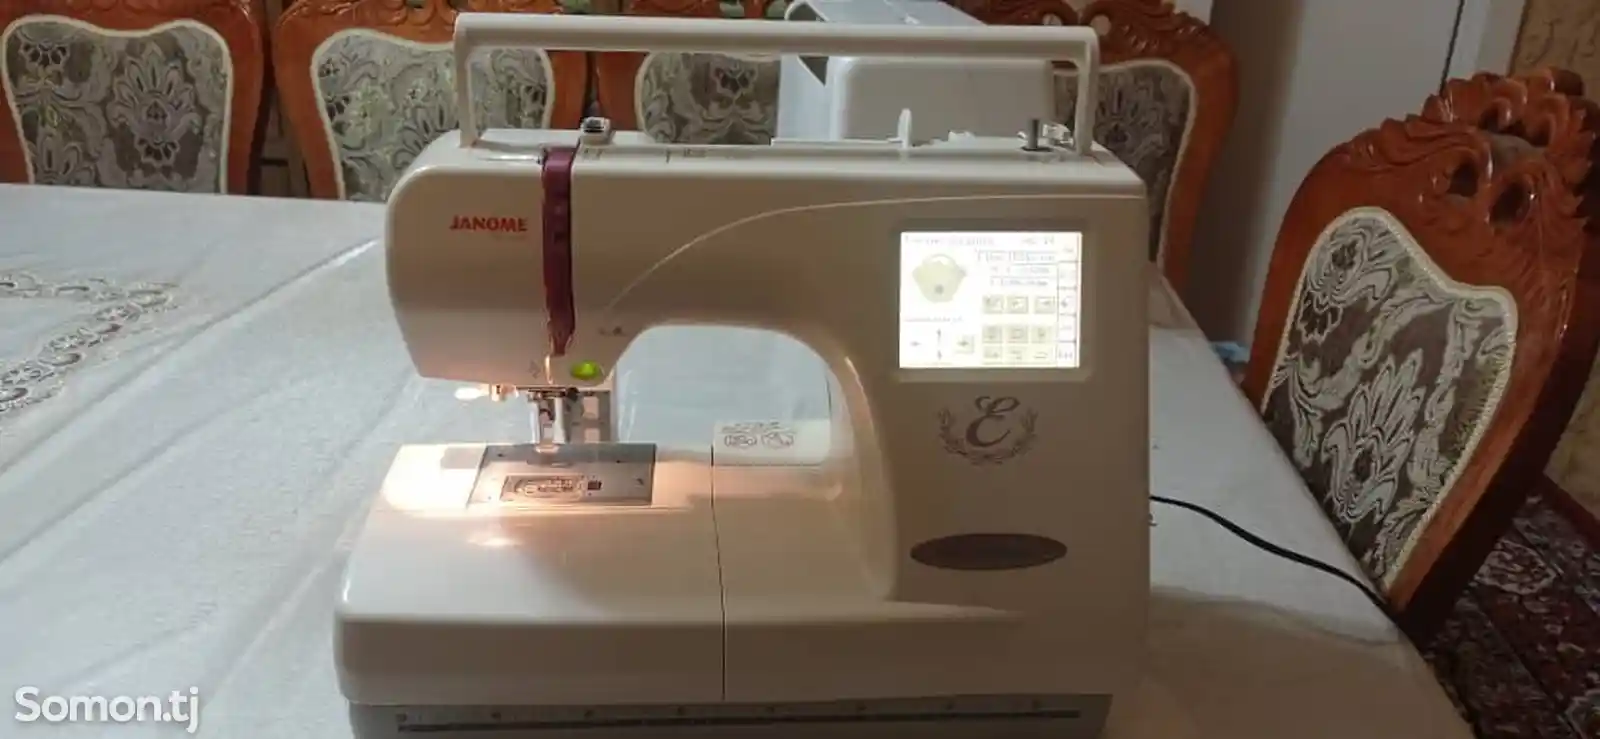 Швейная вышивальная машина Janome-2